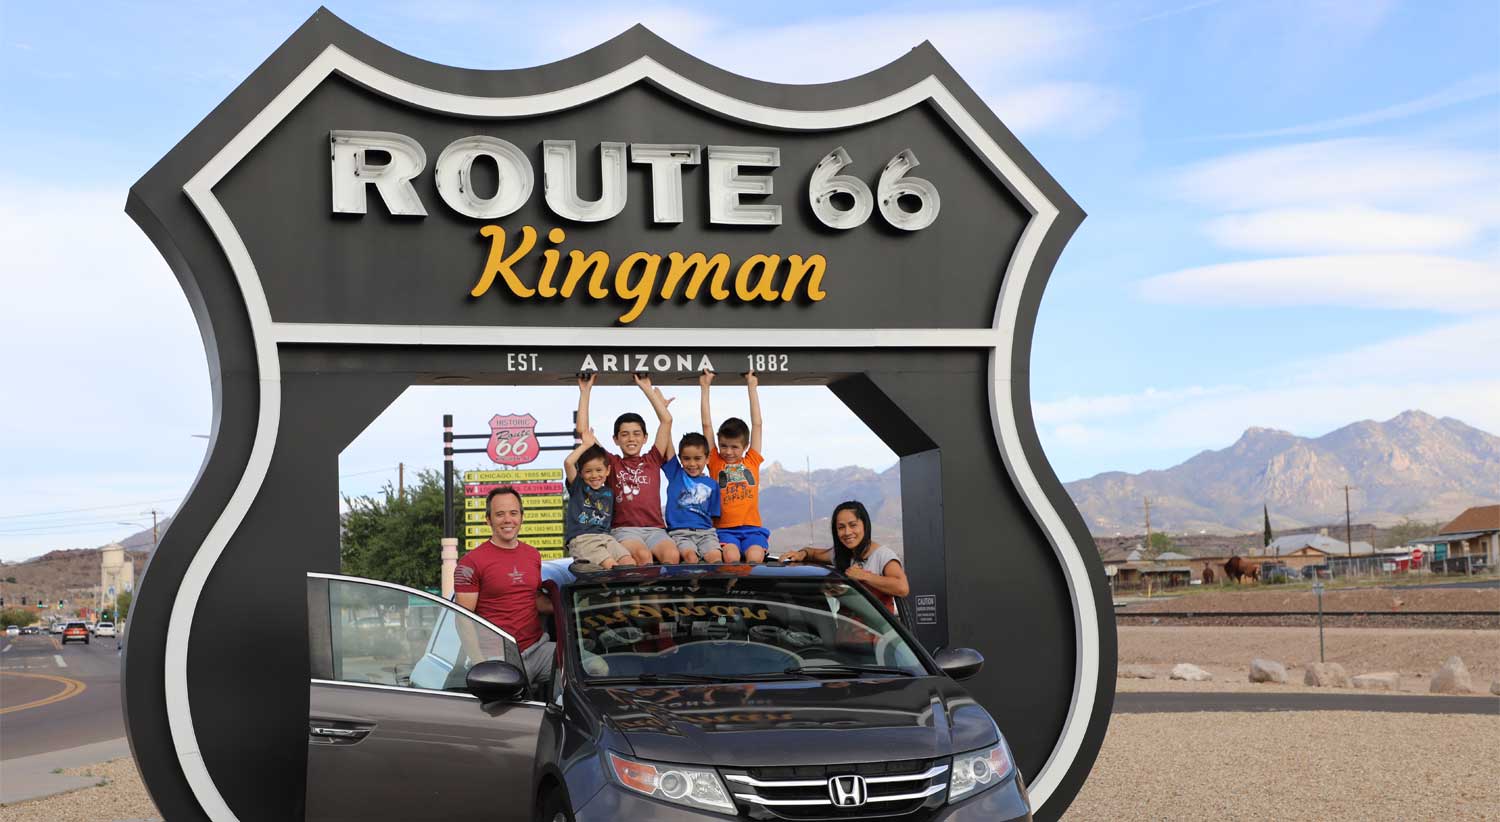 route 66 kingman az sign and family